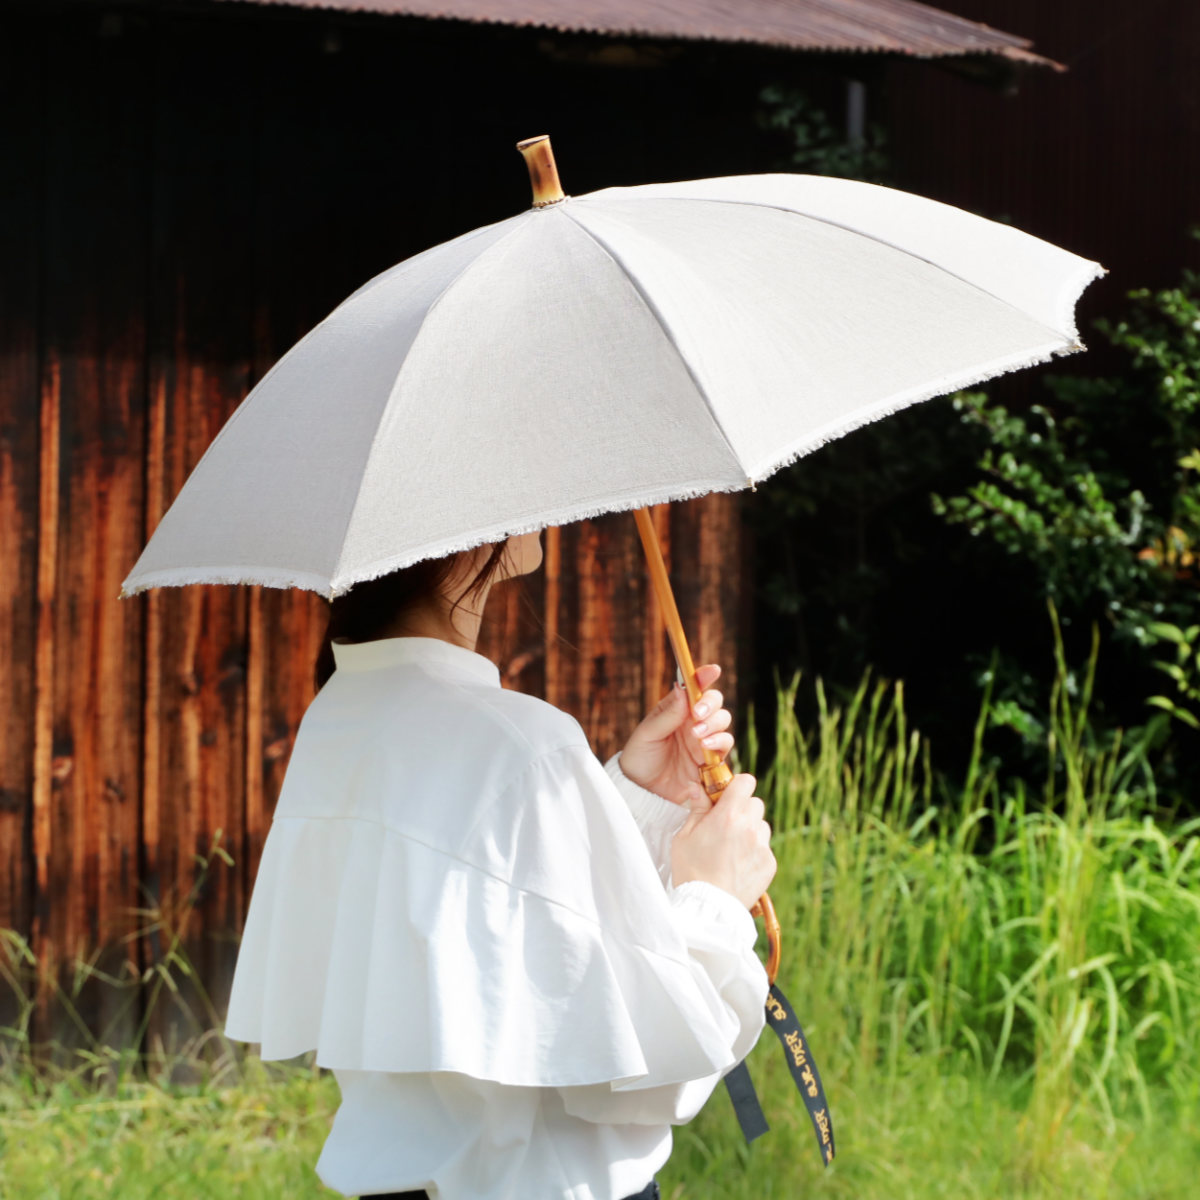 ナチュラルな素材を使用した日本製晴雨兼用傘